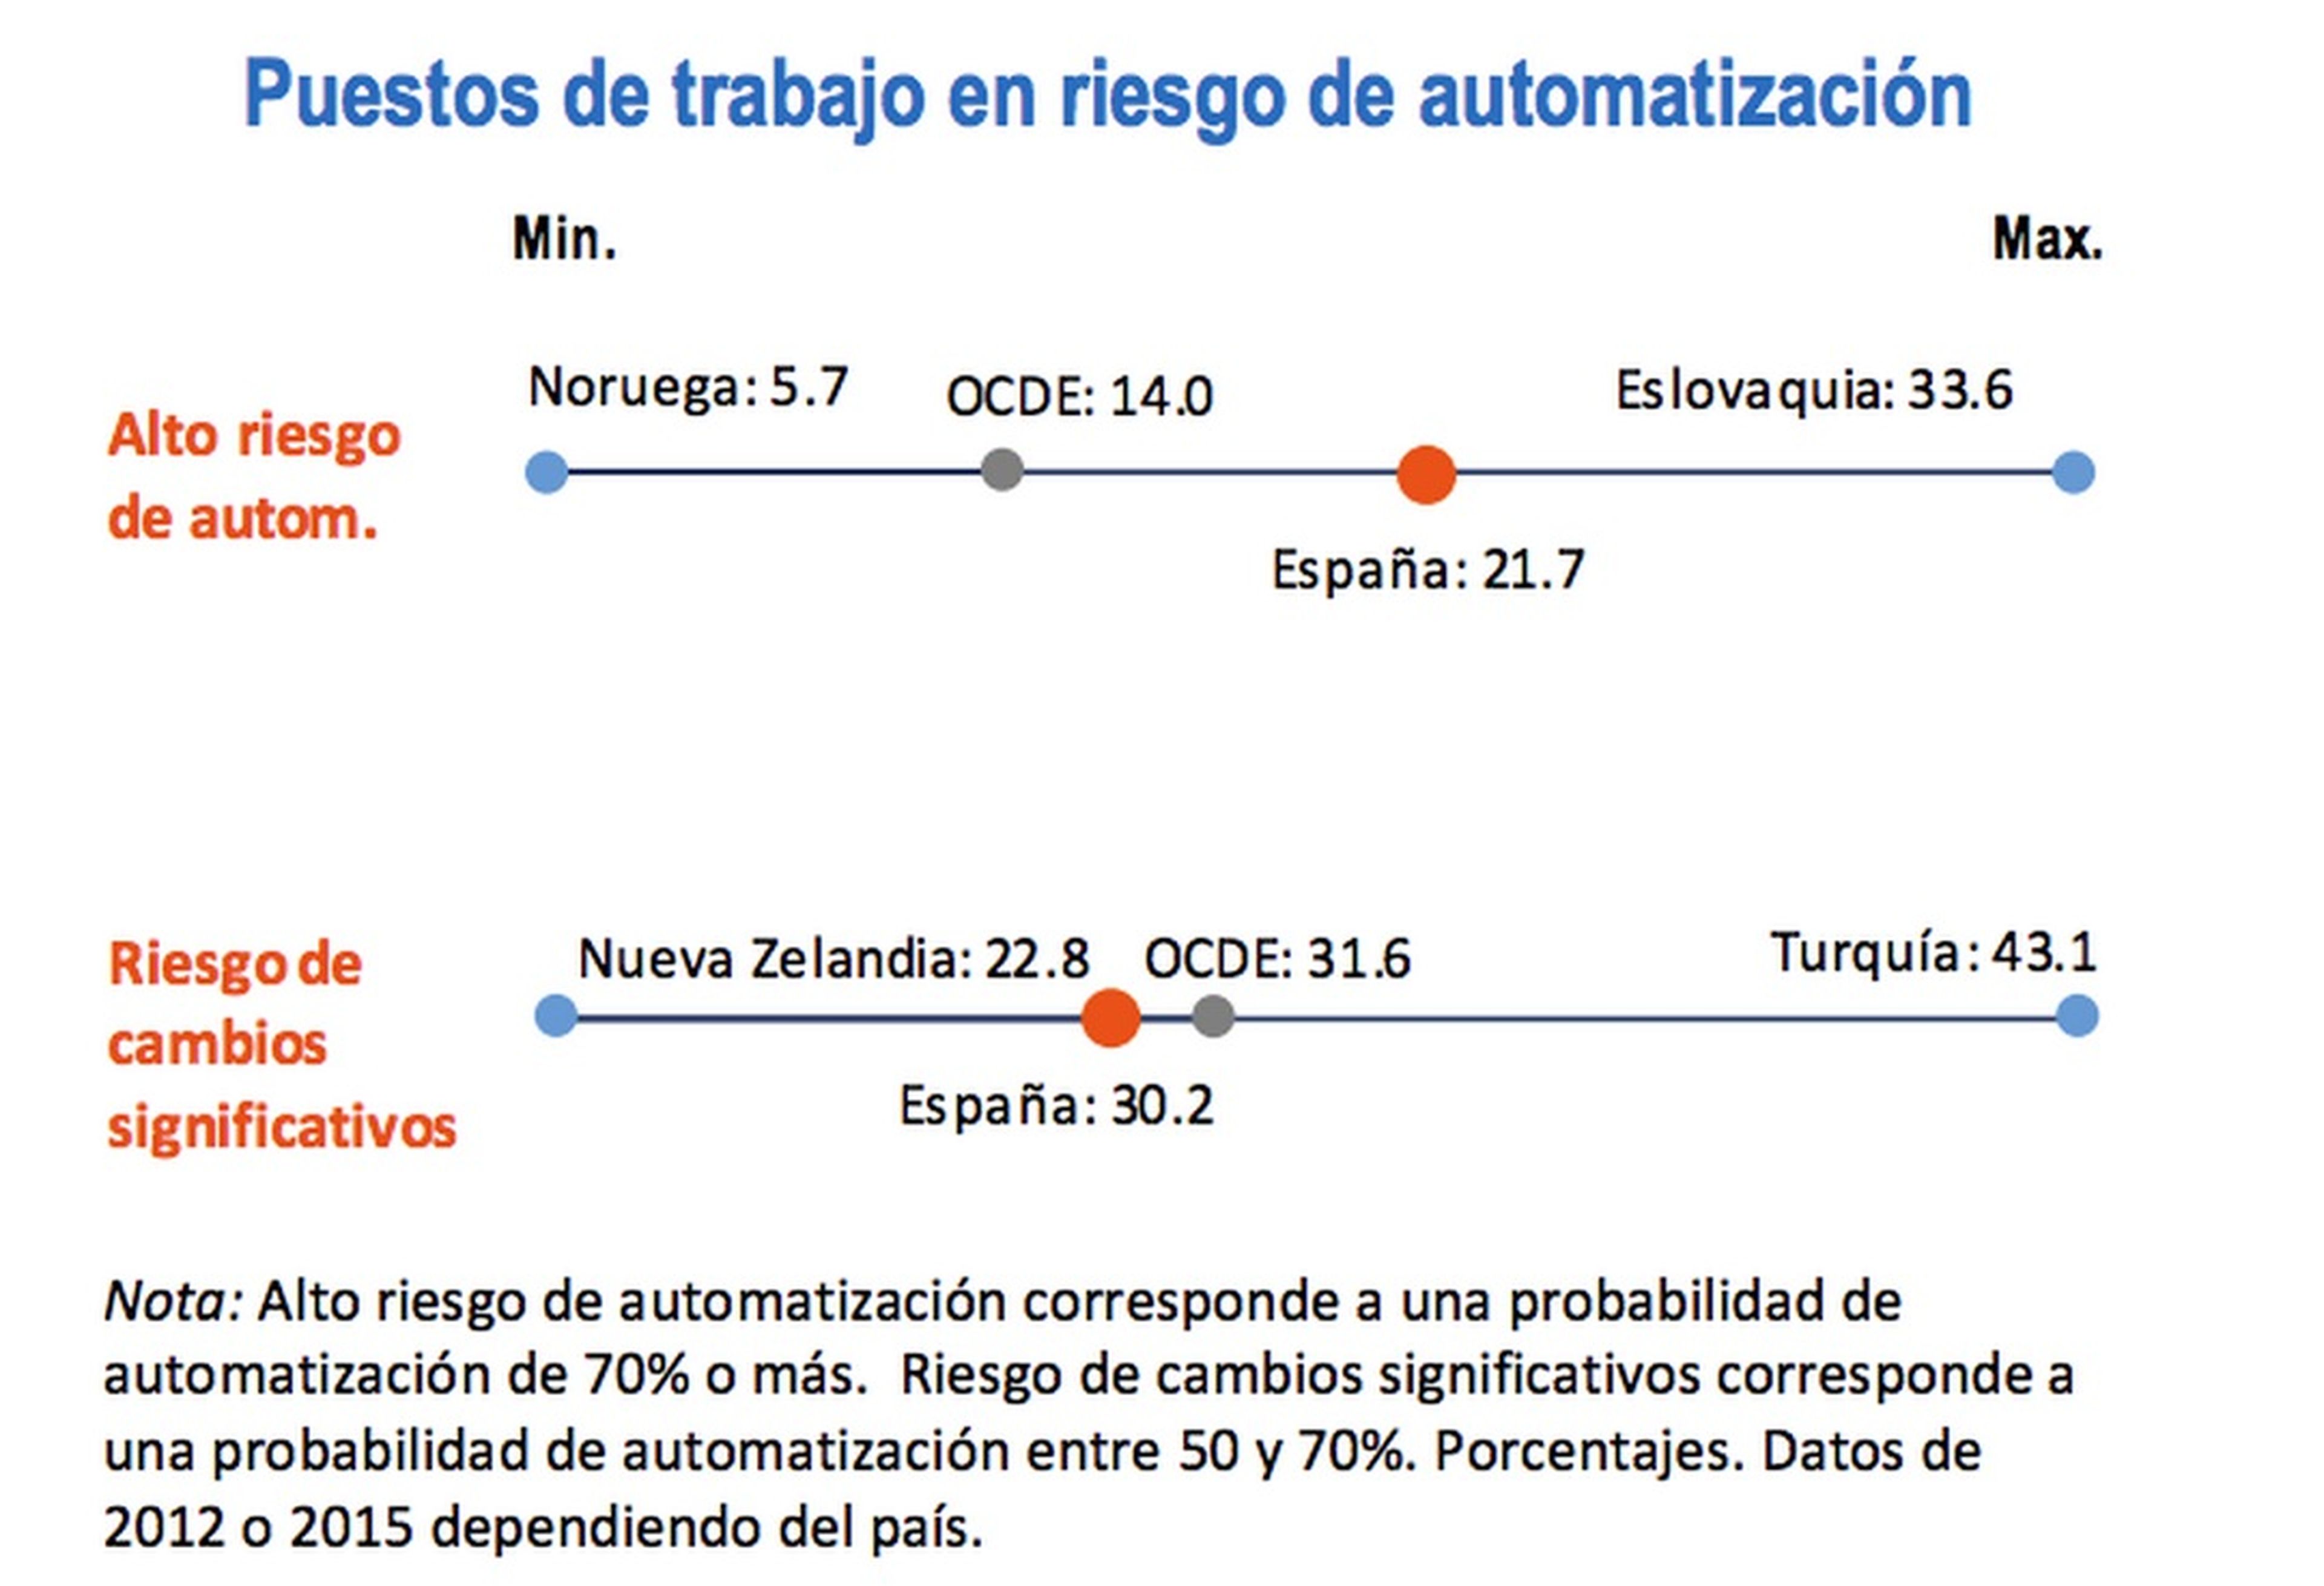 Más de 4 millones de españoles pueden perder su empleo por los robots, según la OCDE